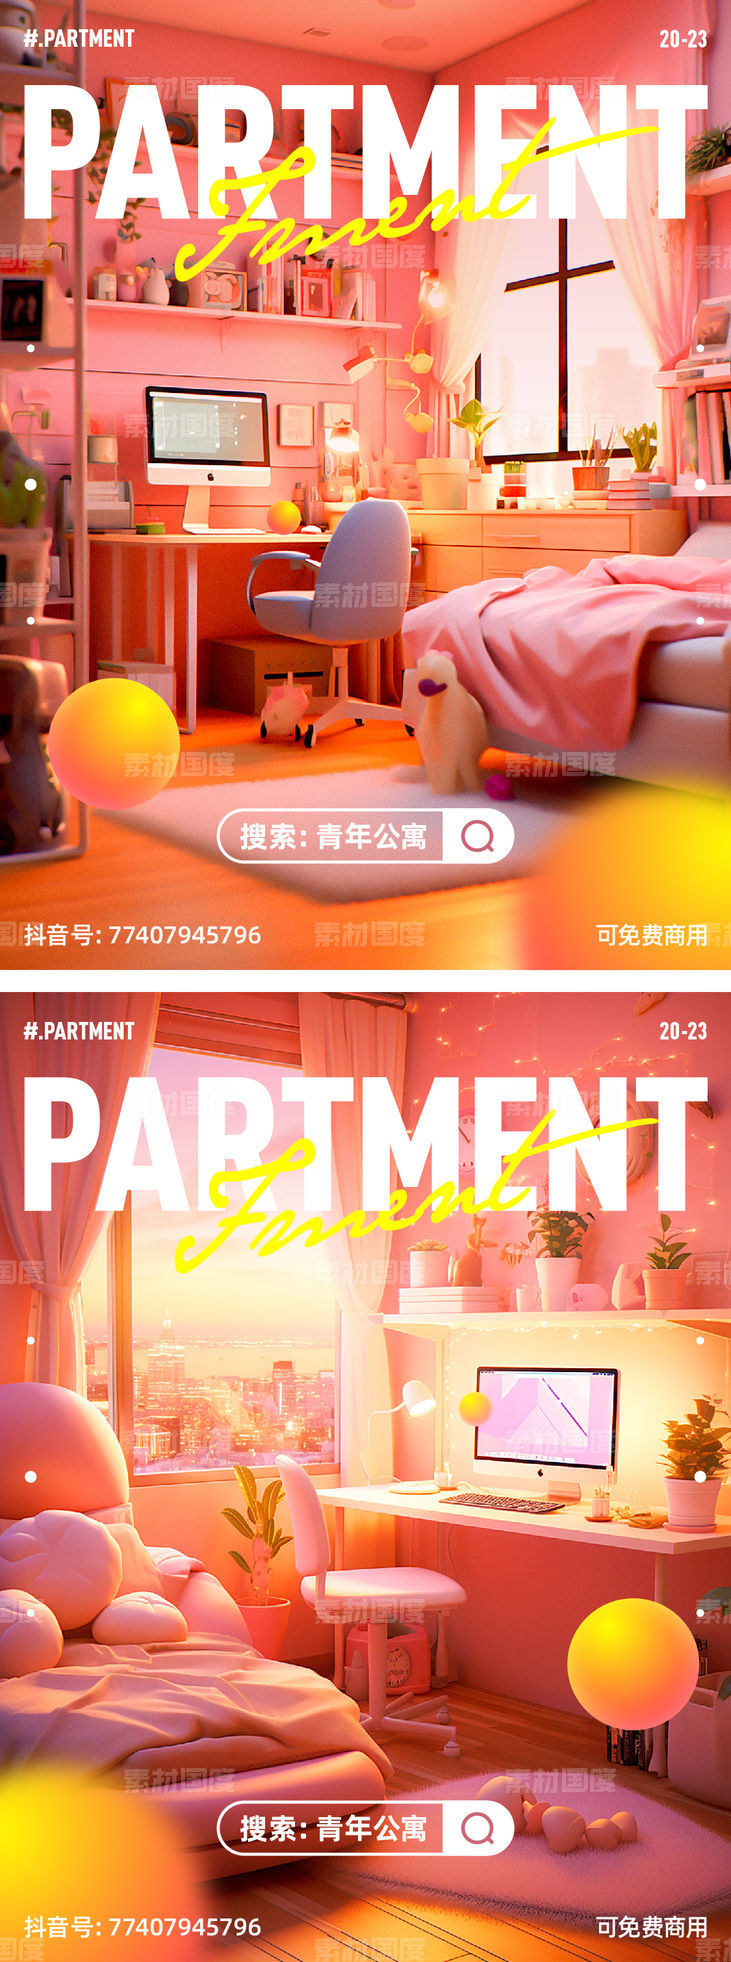 公寓 商业 2.5D 卧室 海报 等距 微信